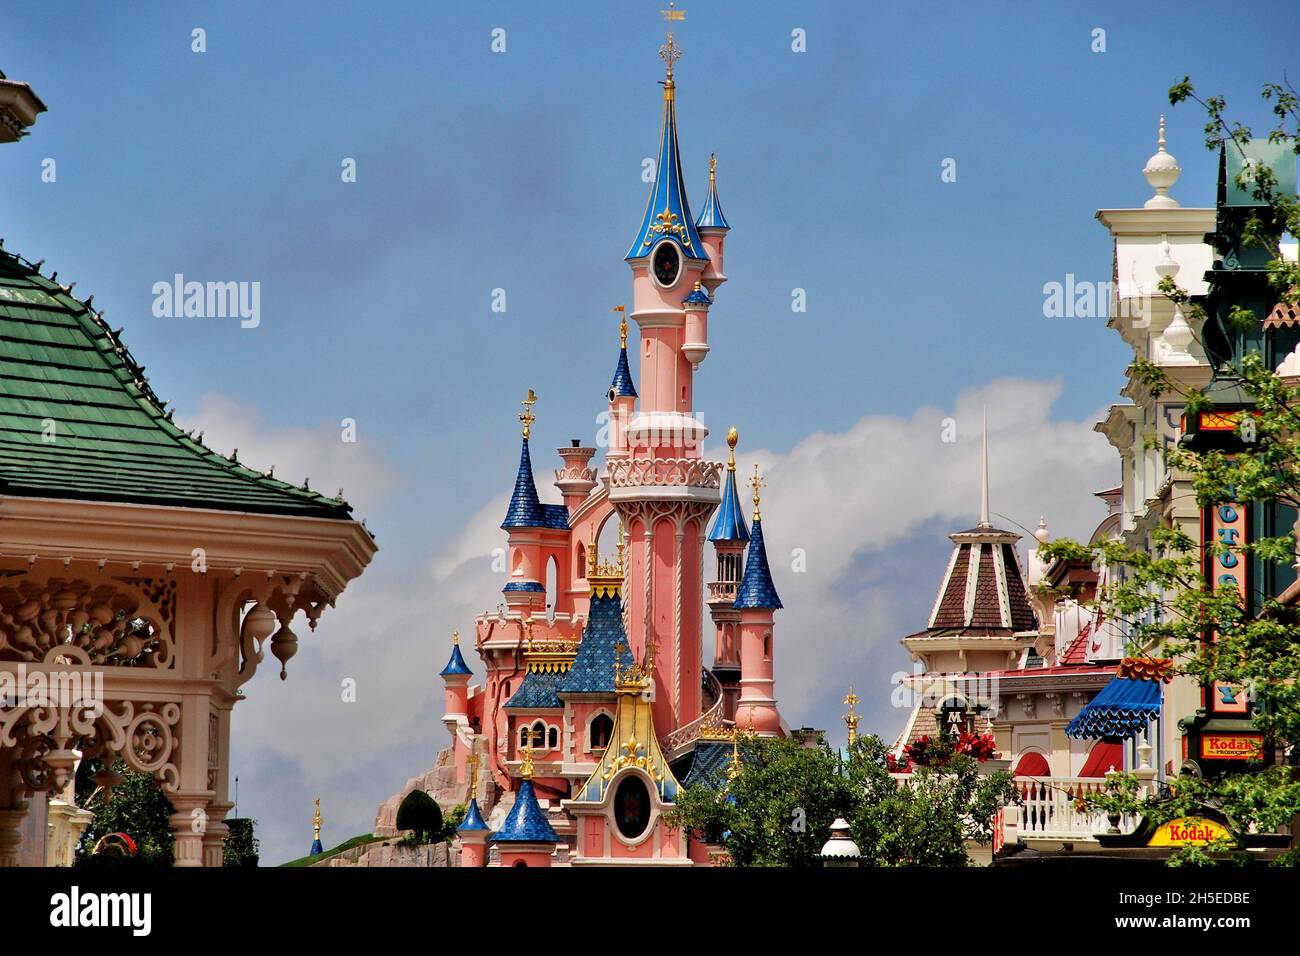 Disney Castle, Marne-la-Vallée, Paris, France Stock Photo